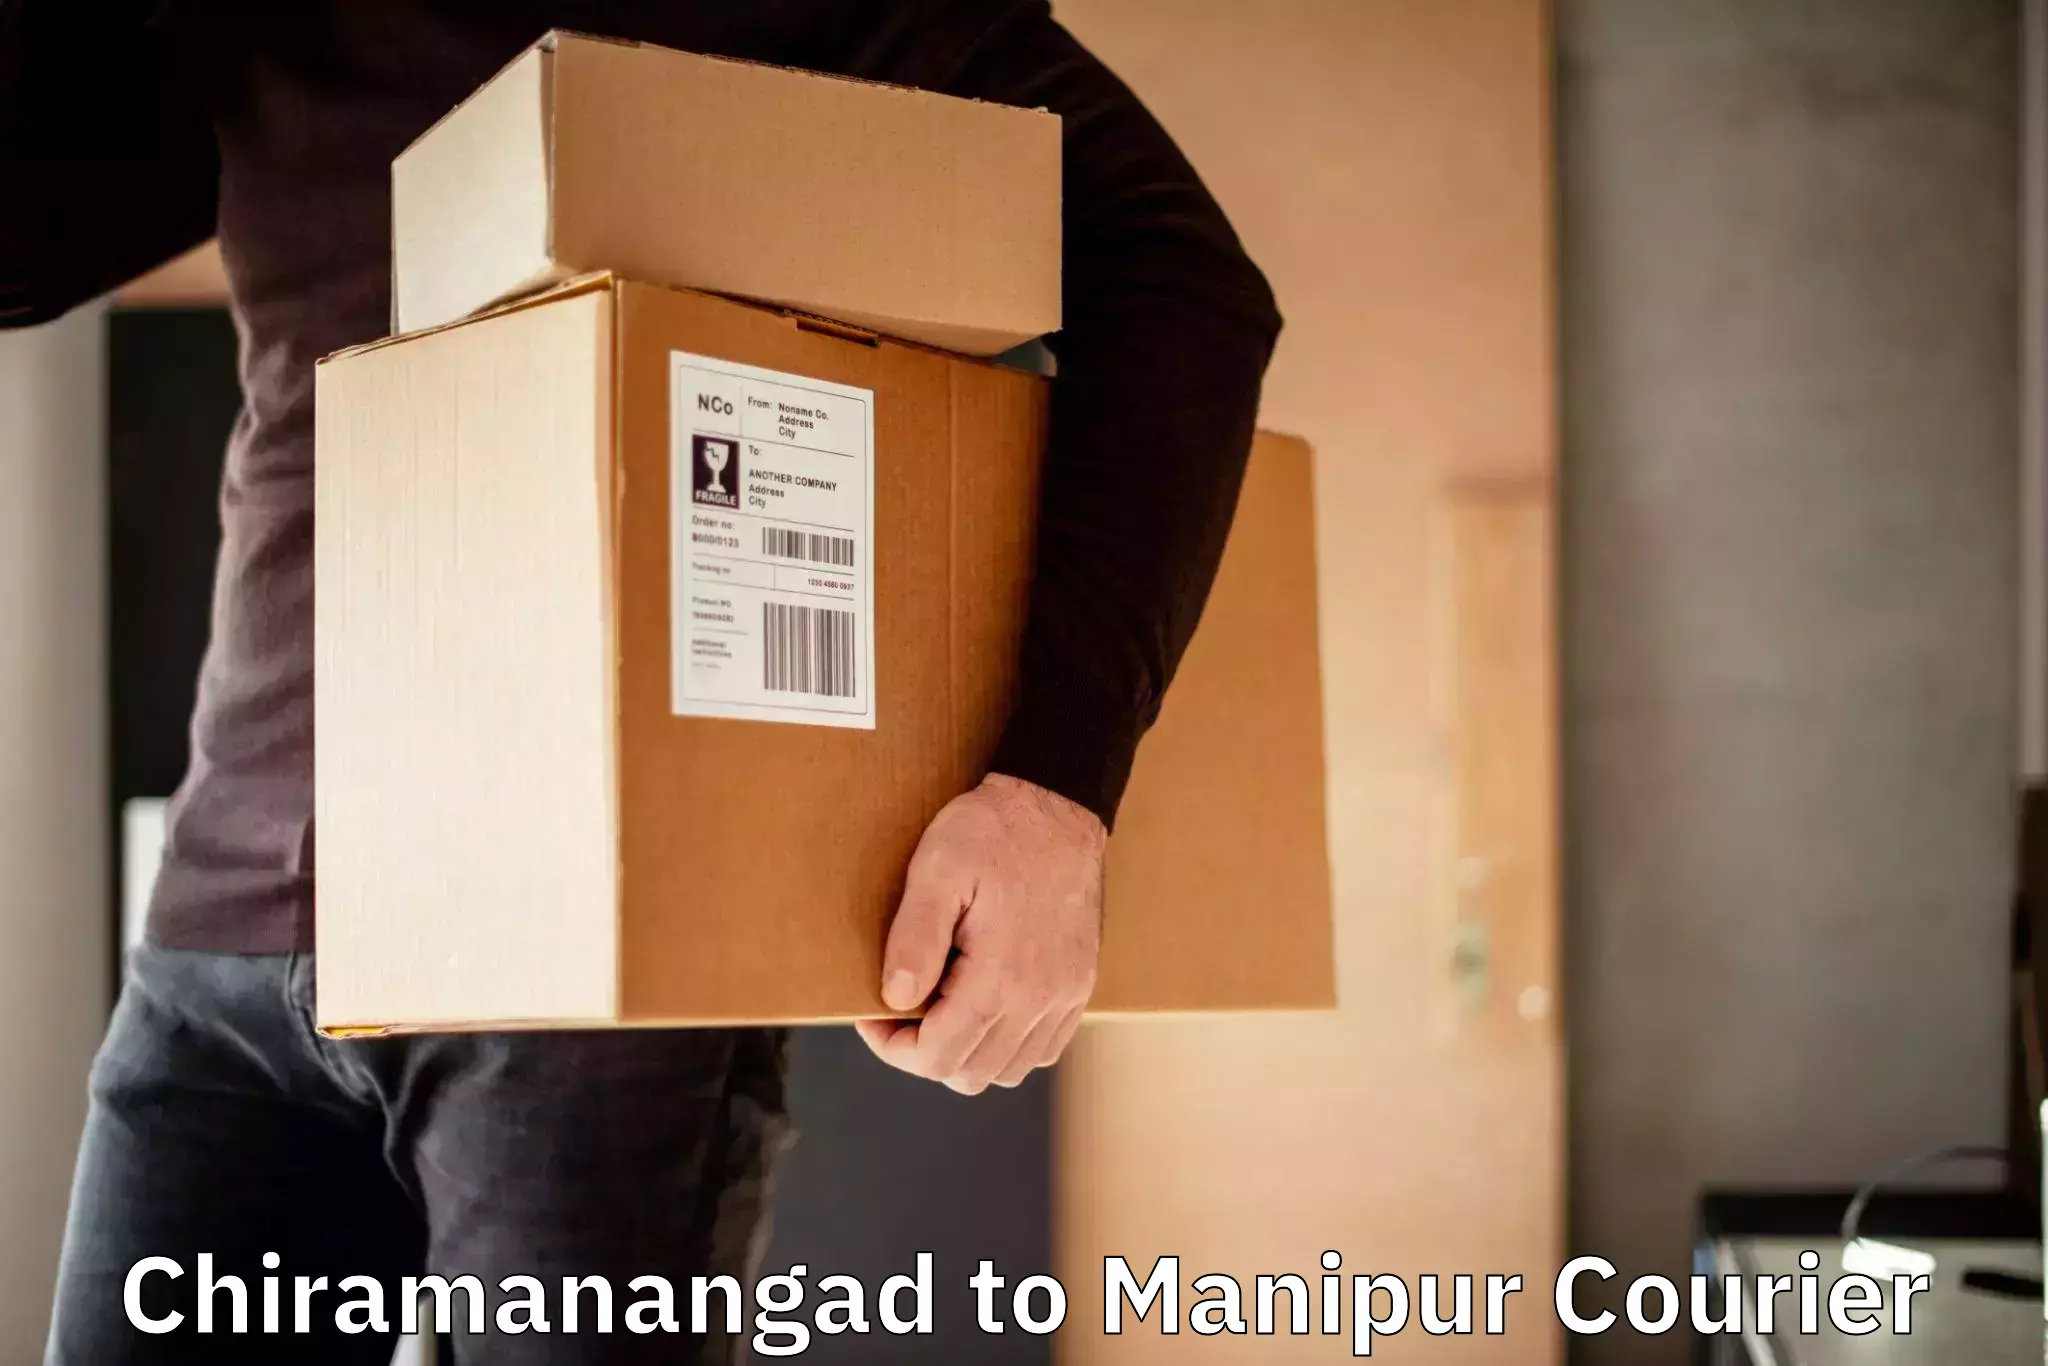 Next-day delivery options Chiramanangad to Churachandpur